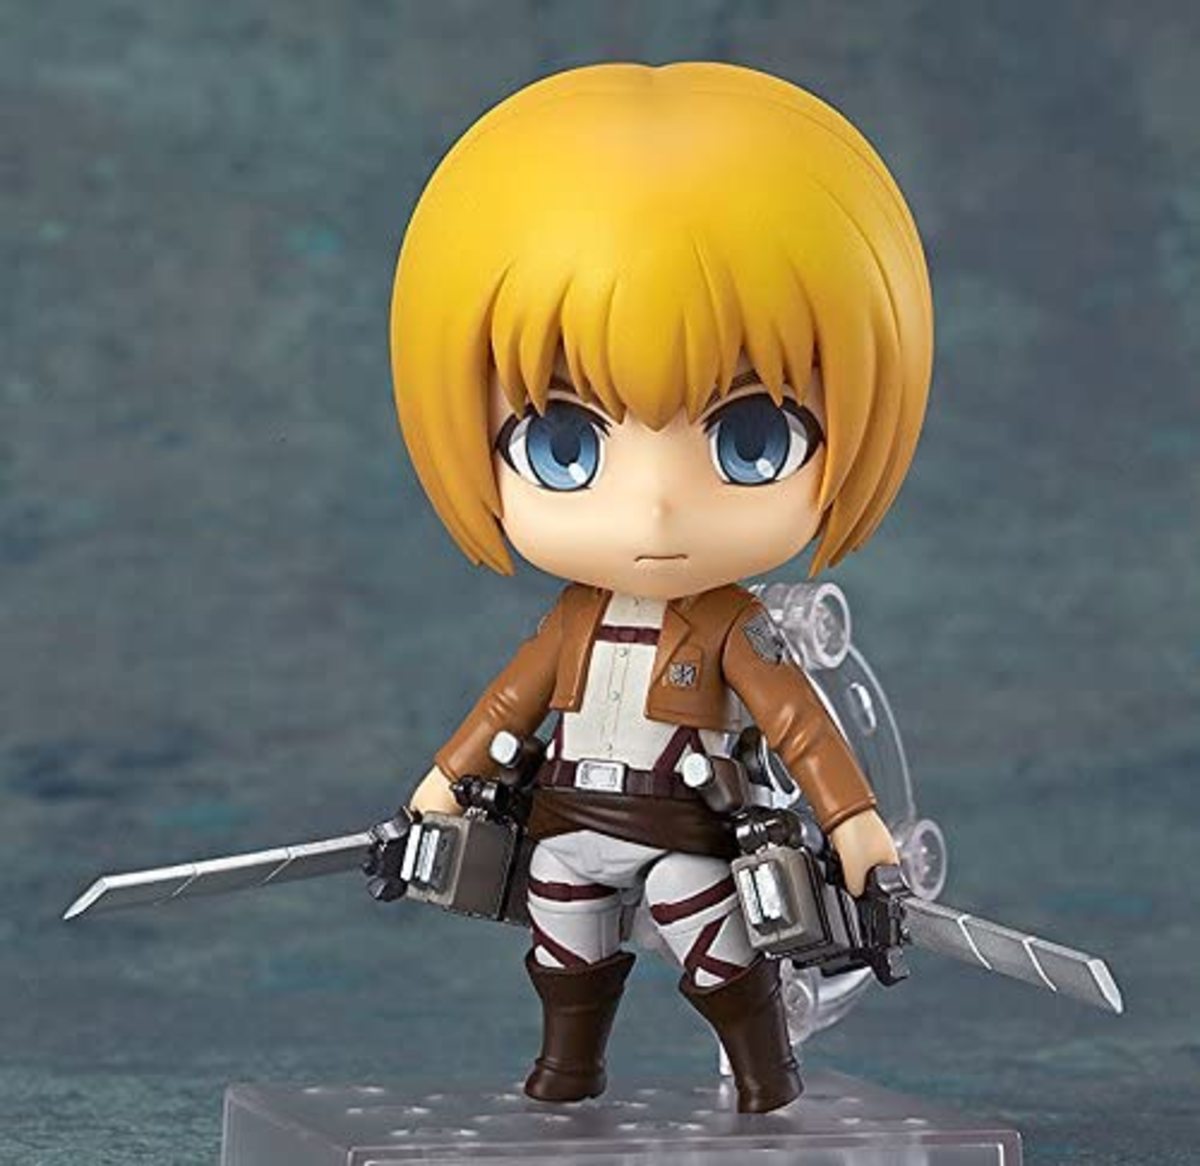 Armin Attack on Titan